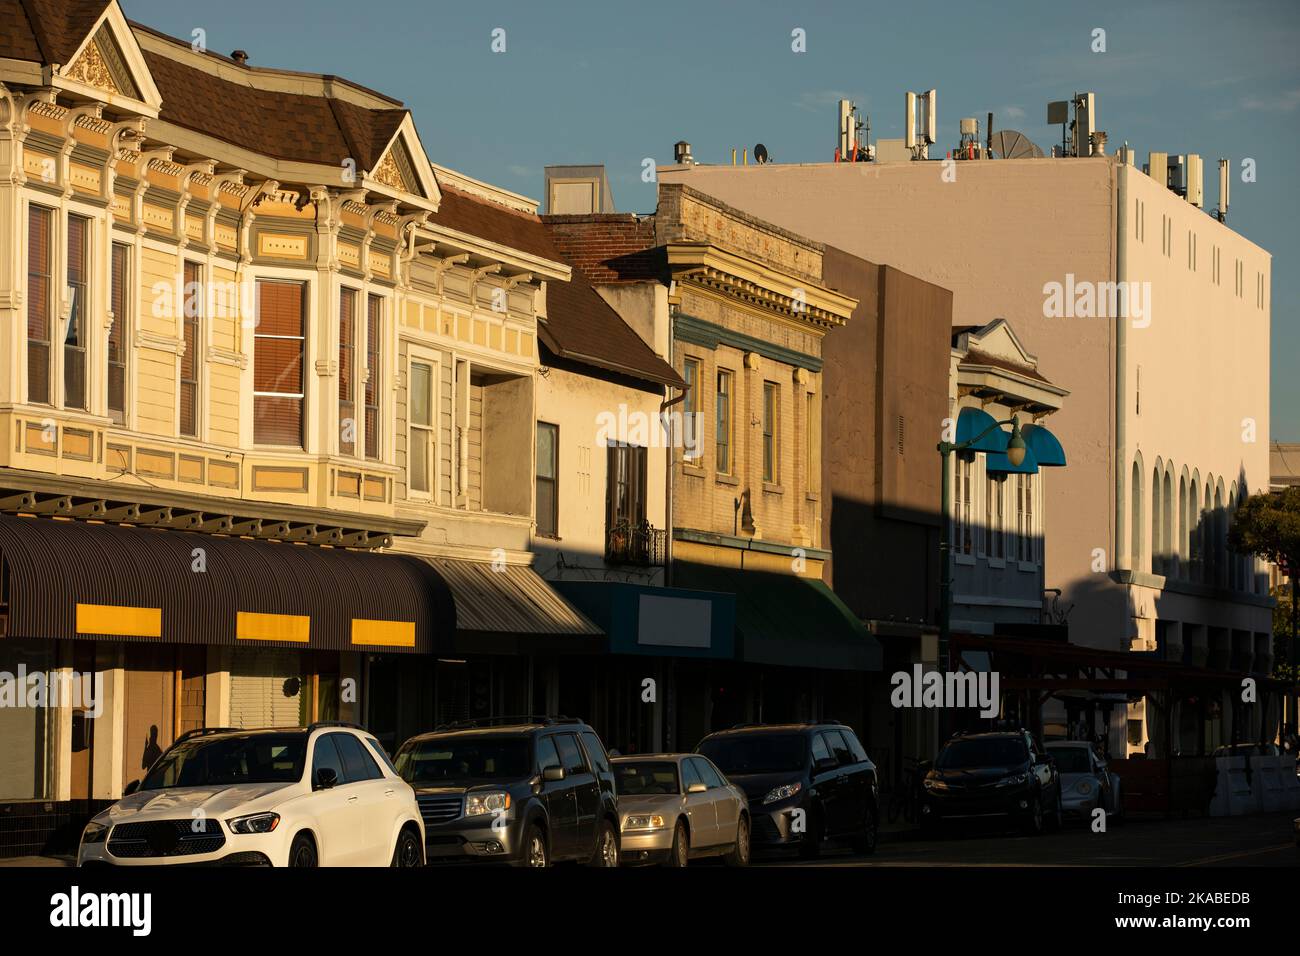 Am späten Nachmittag scheint die Sonne auf der historischen Bay Area City in der Innenstadt von Alameda, Kalifornien, USA. Stockfoto